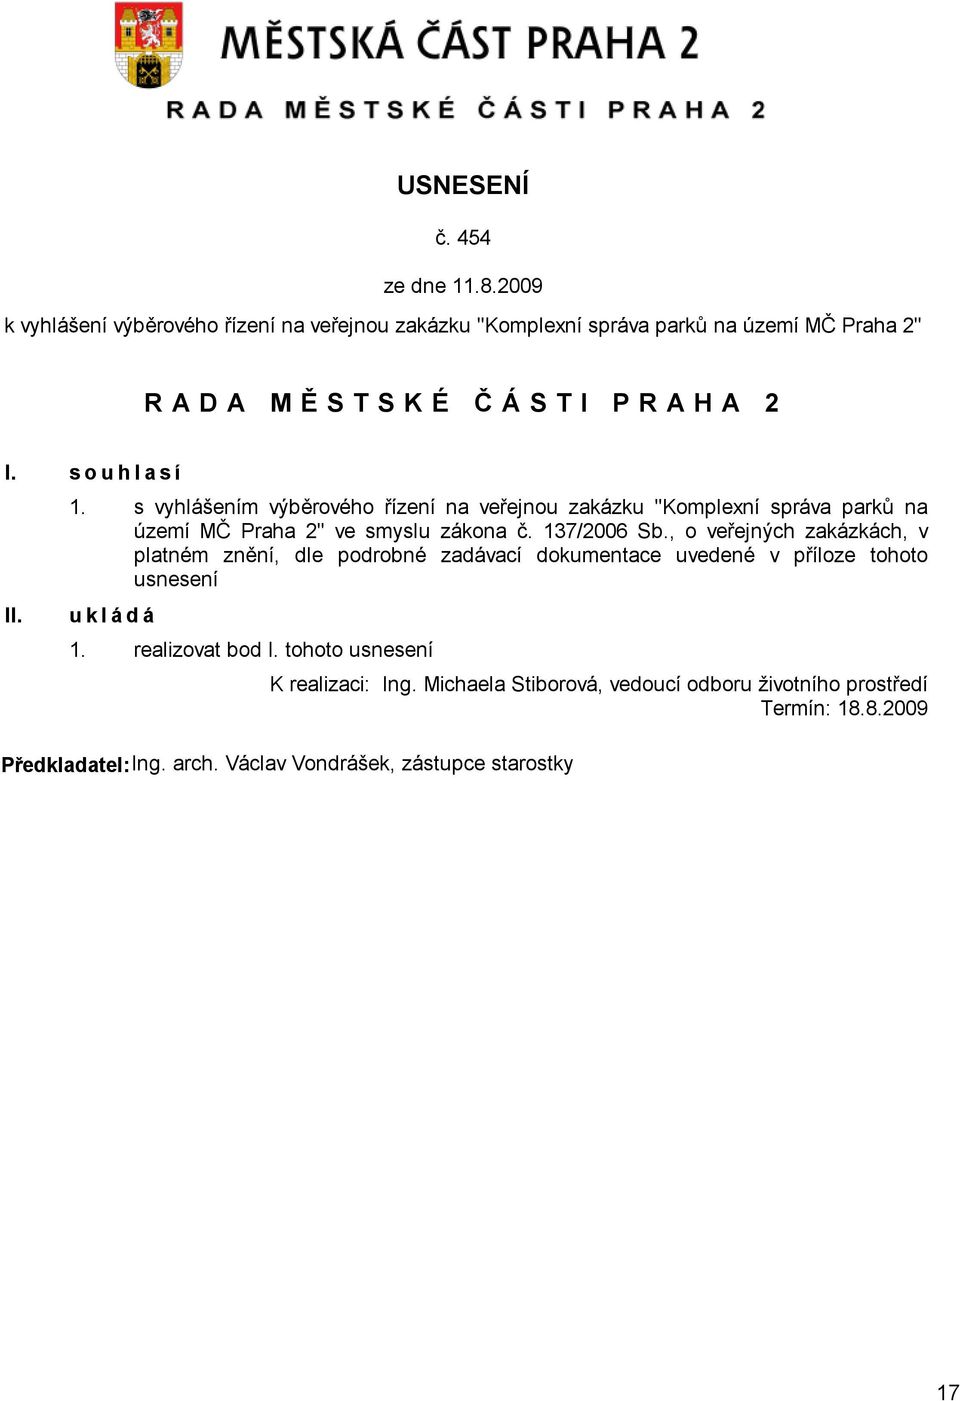 s vyhlášením výběrového řízení na veřejnou zakázku "Komplexní správa parků na území MČ Praha 2" ve smyslu zákona č. 137/2006 Sb.